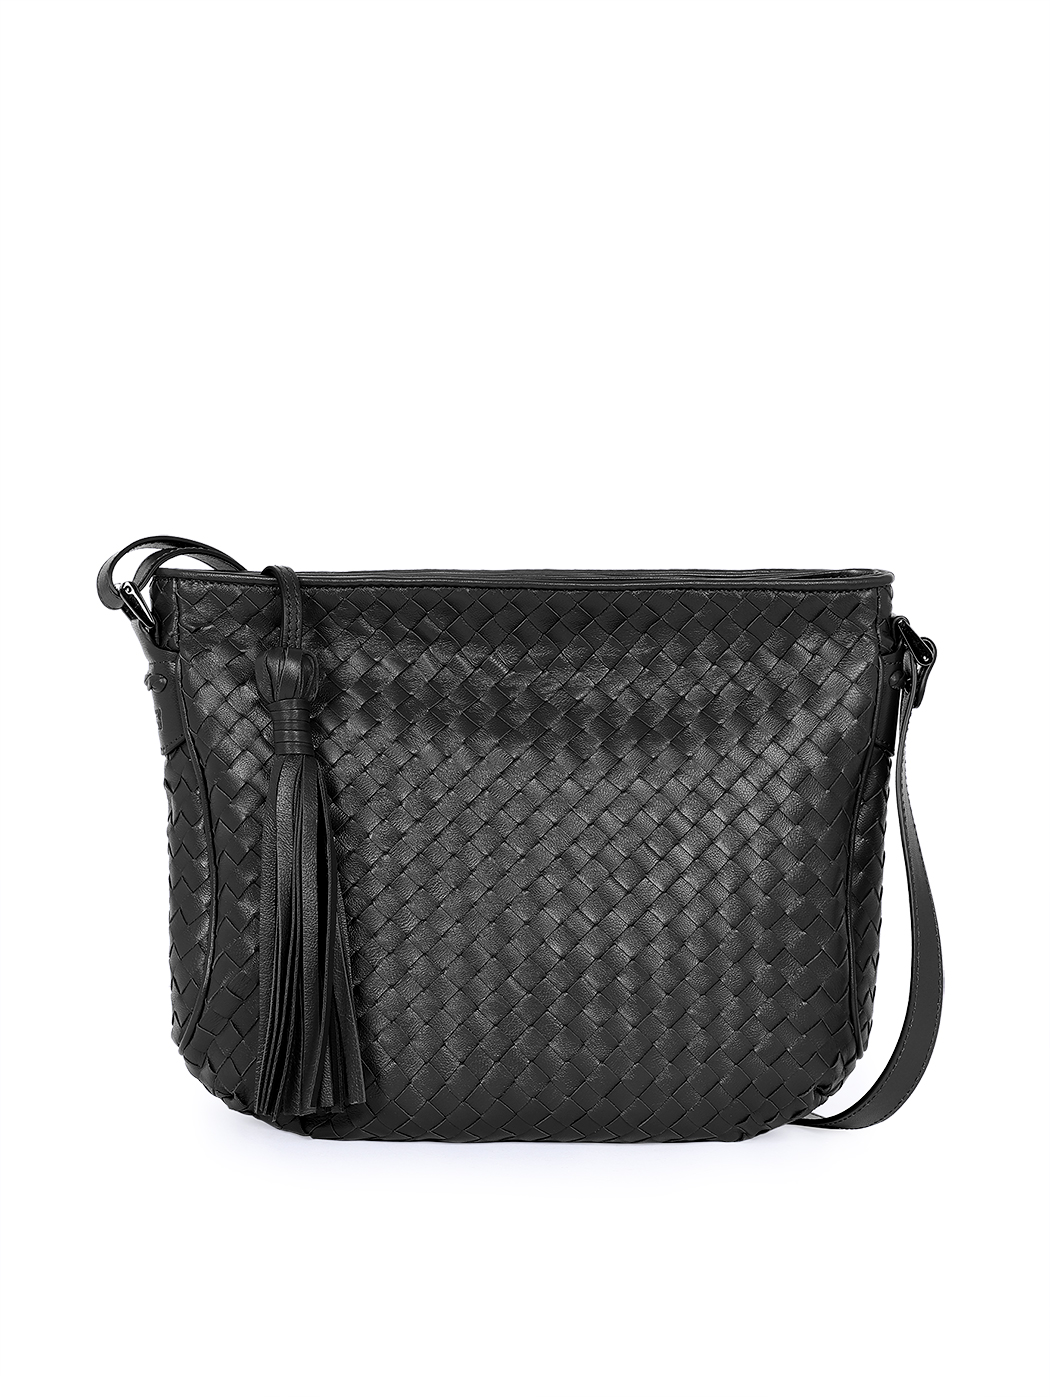 Женская плетеная сумка кросс – боди коллекции Intrecci черного цвета